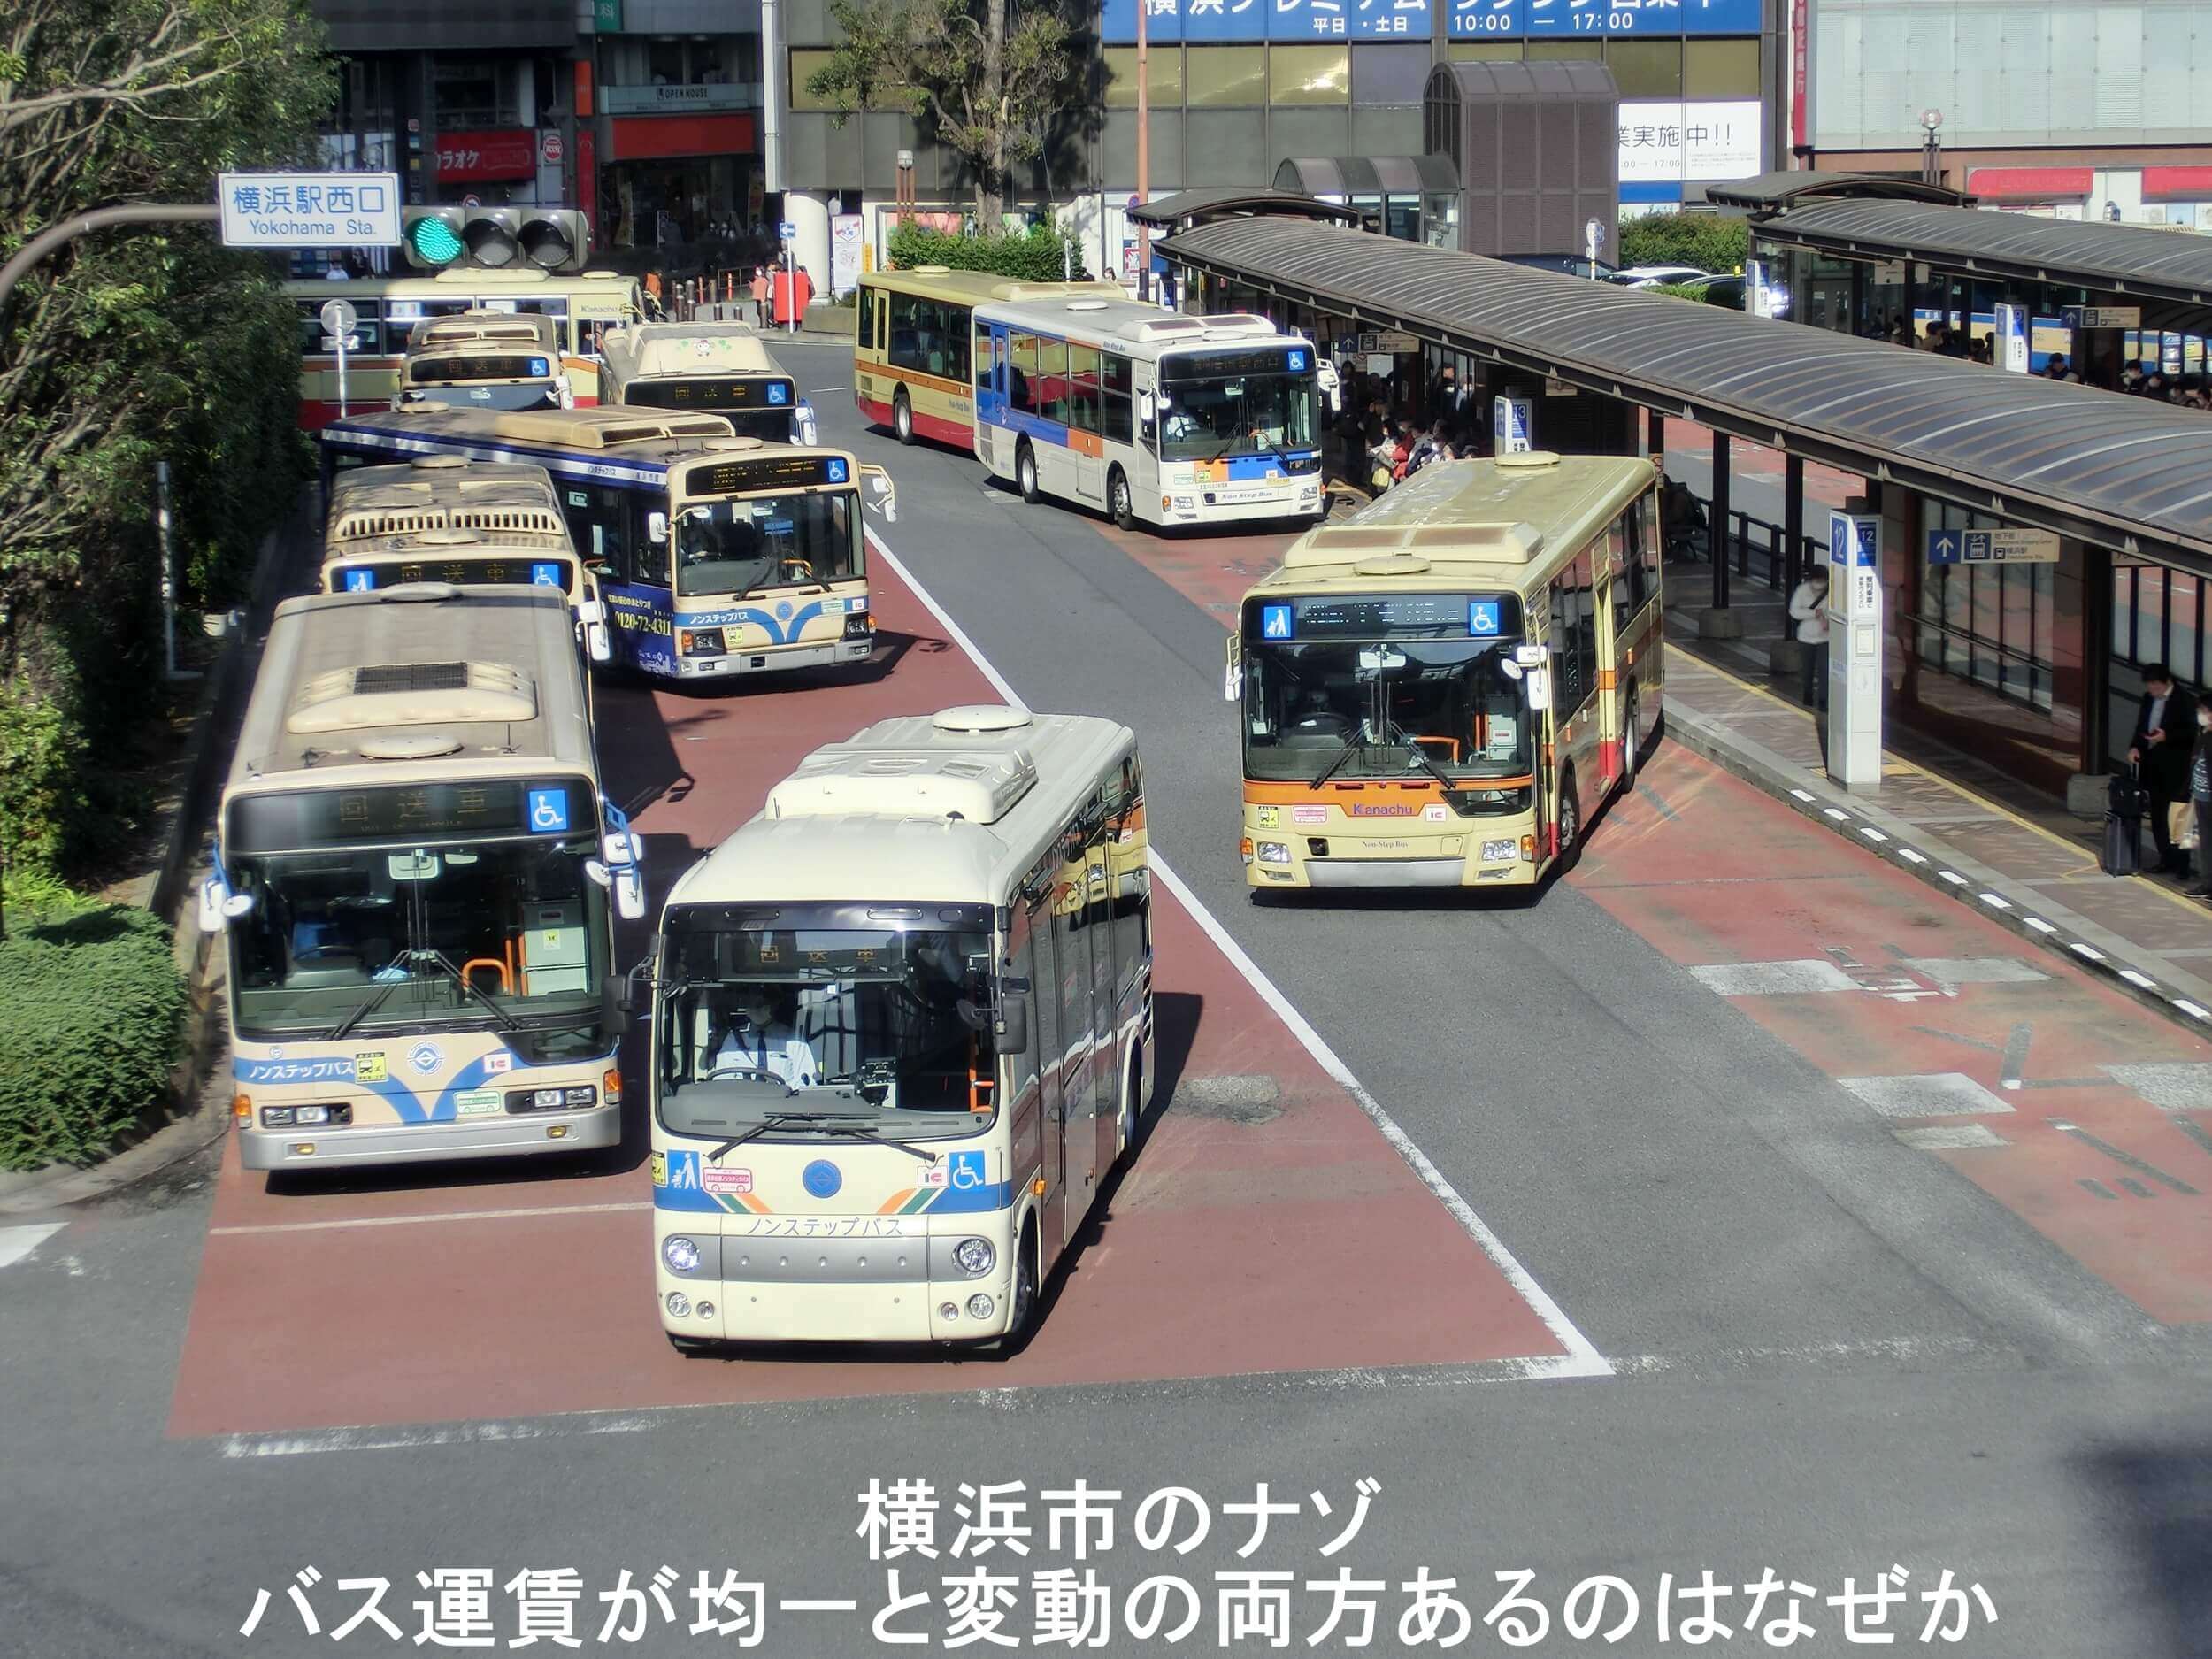 【横浜市のナゾ】バス運賃が均一と変動の両方あるのはなぜか